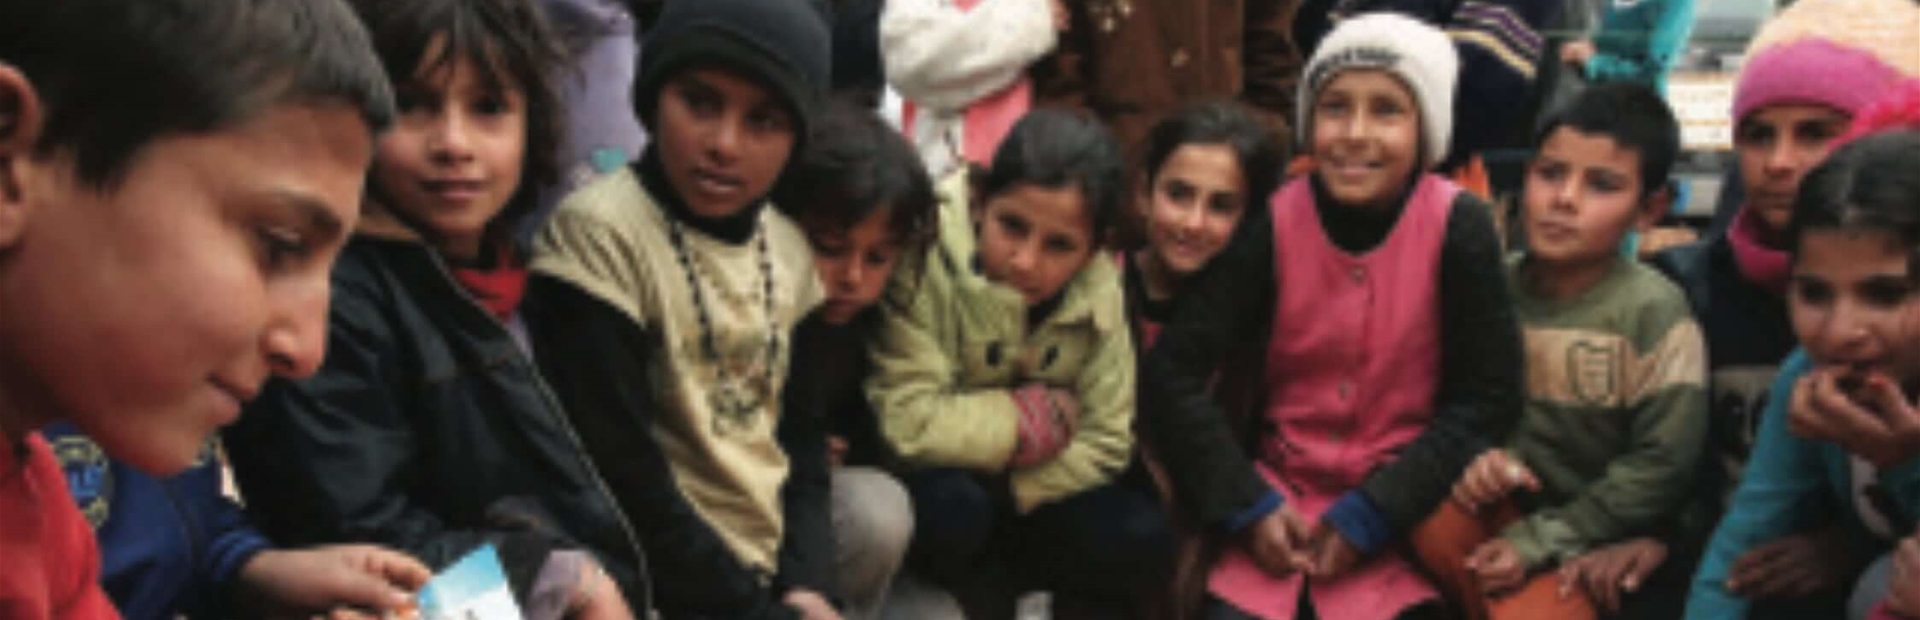 «لحظة ٢»: يوميات النزوح بعيون اطفال سوريين